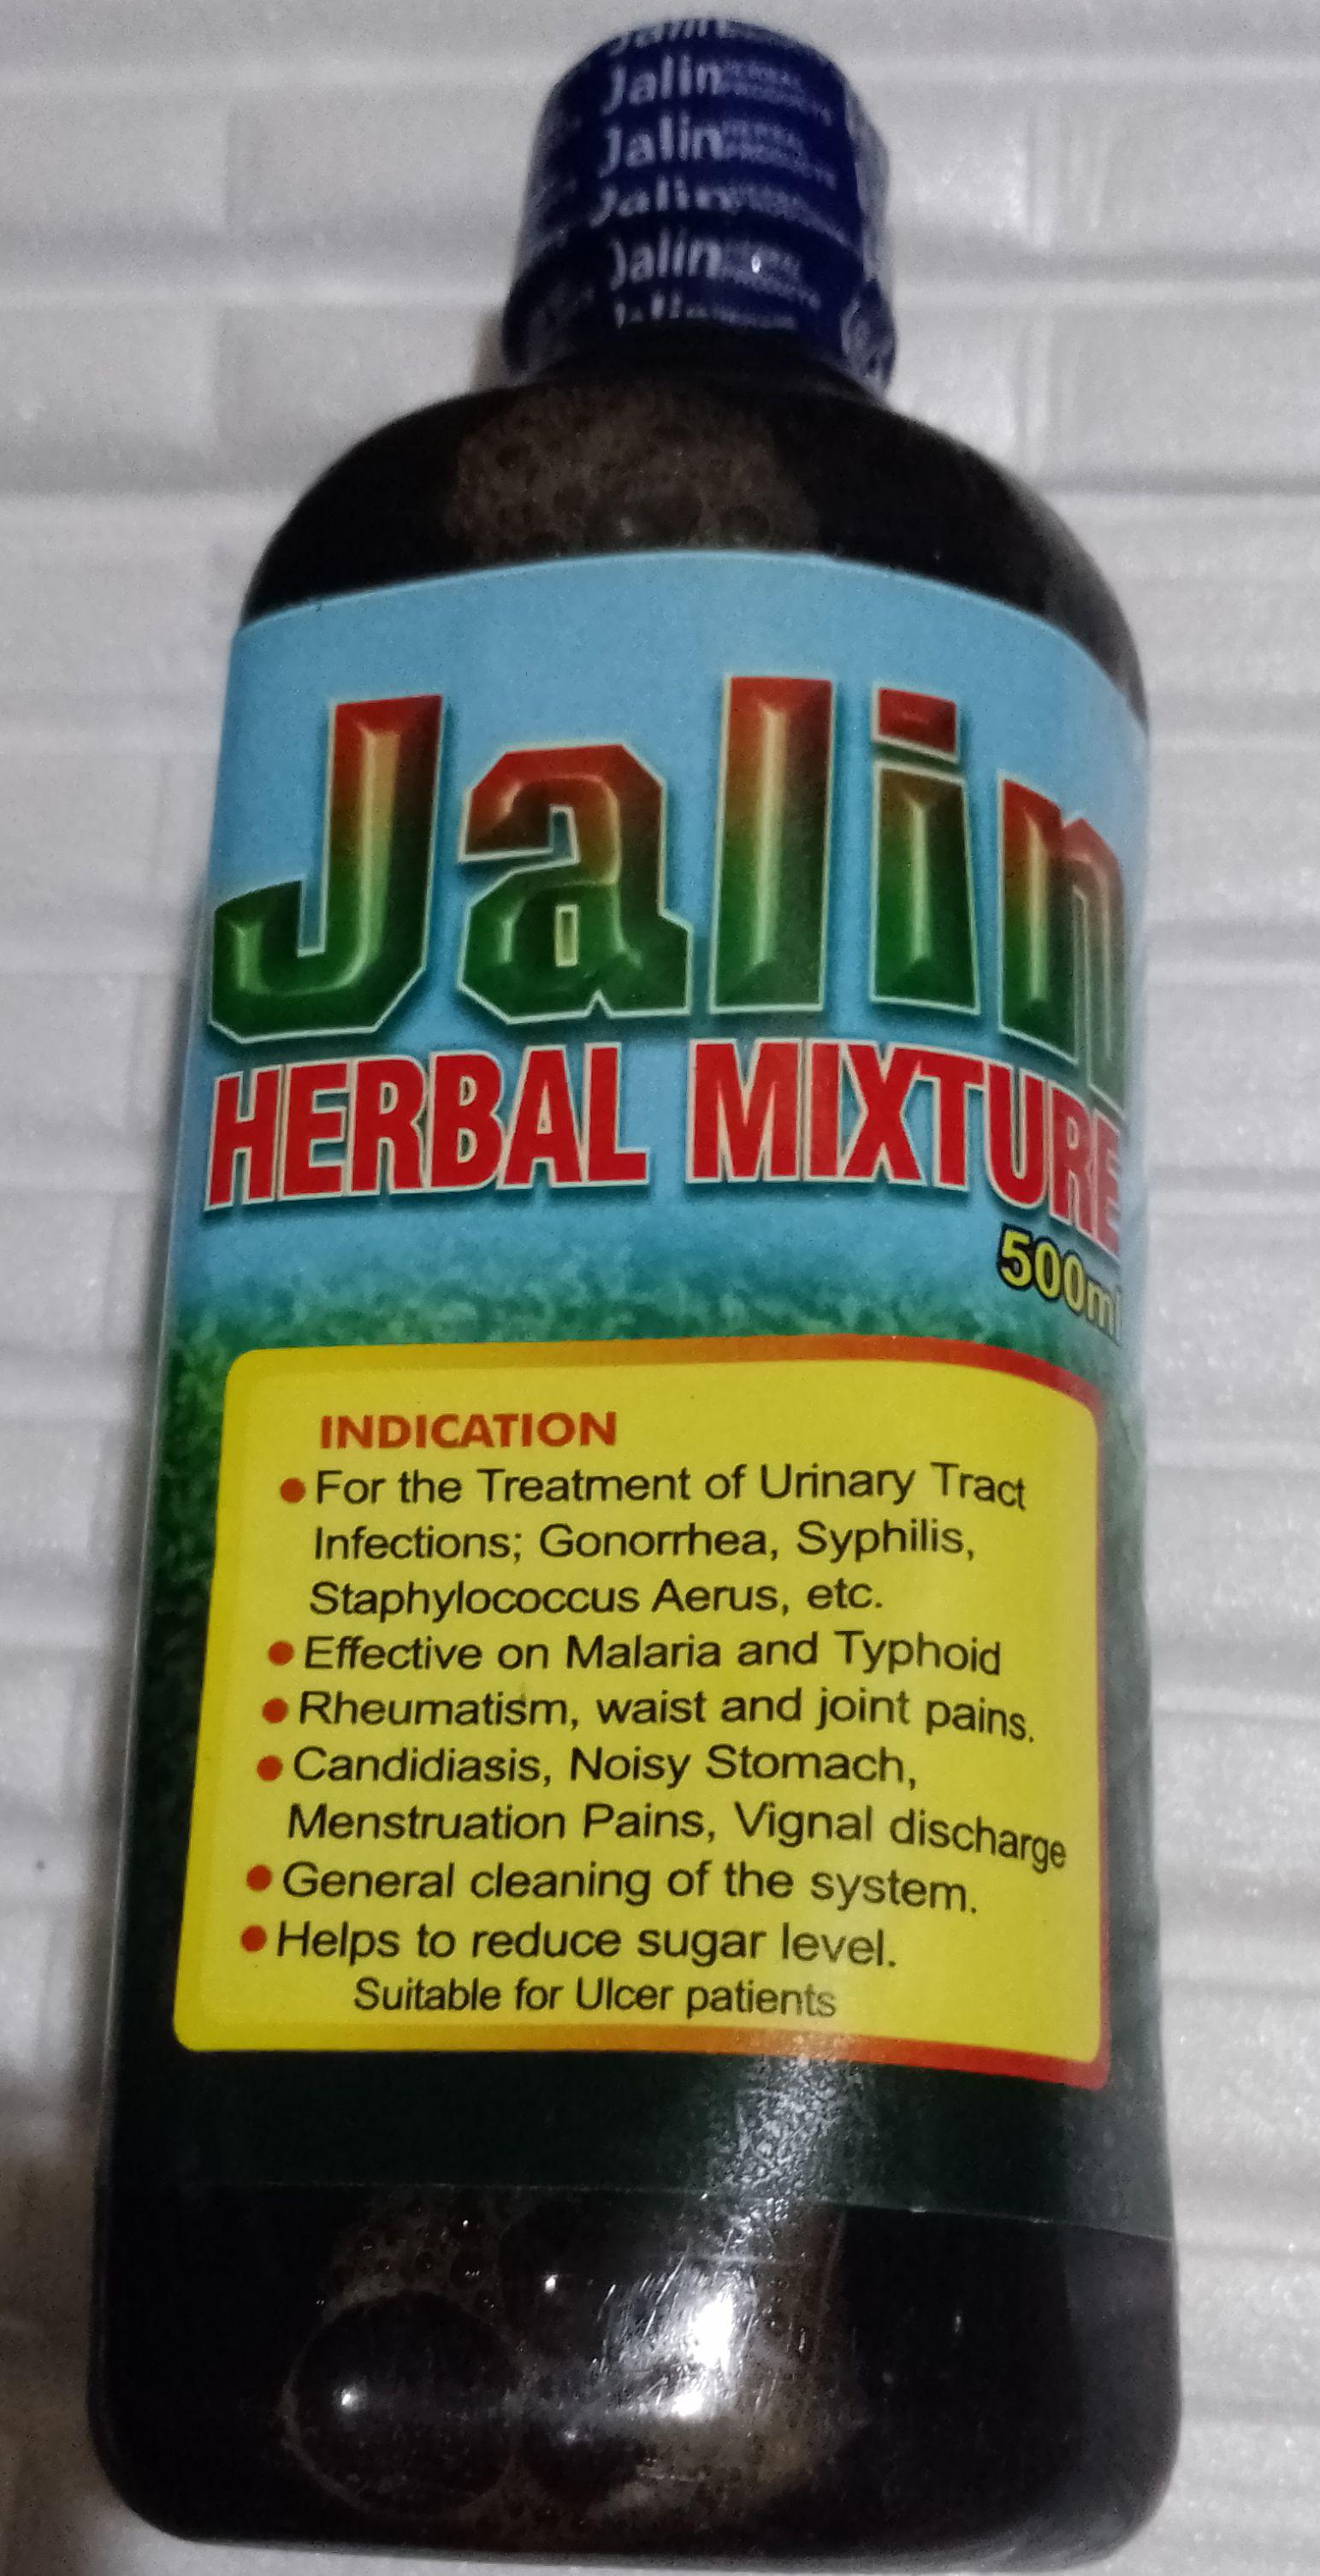 Jalin Herbal Mixture Liquid